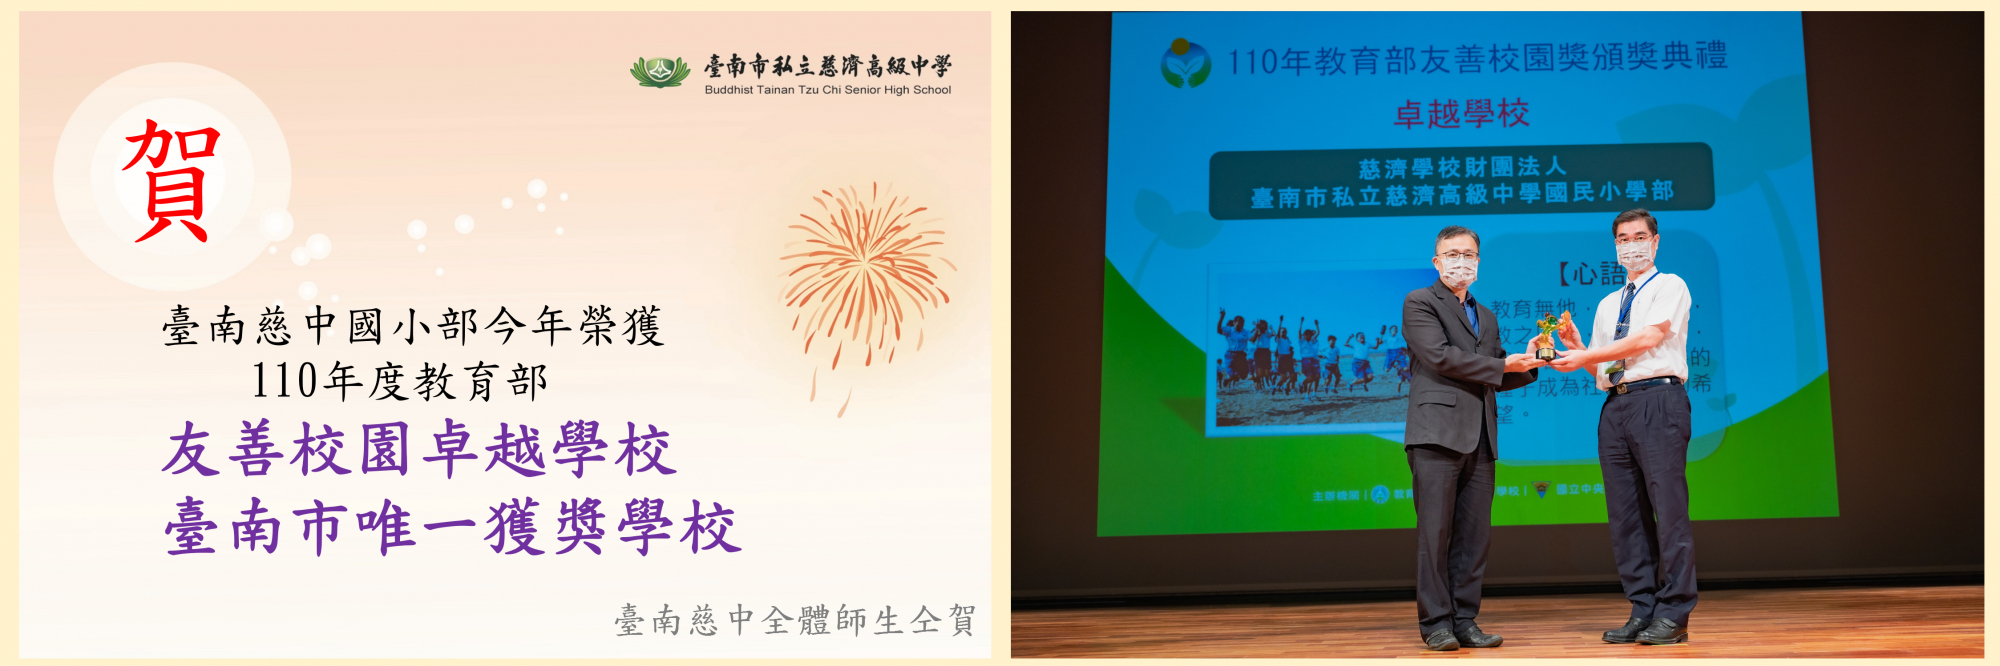 110全國唯二 臺南慈中國小部榮獲教育部友善校園卓越學校